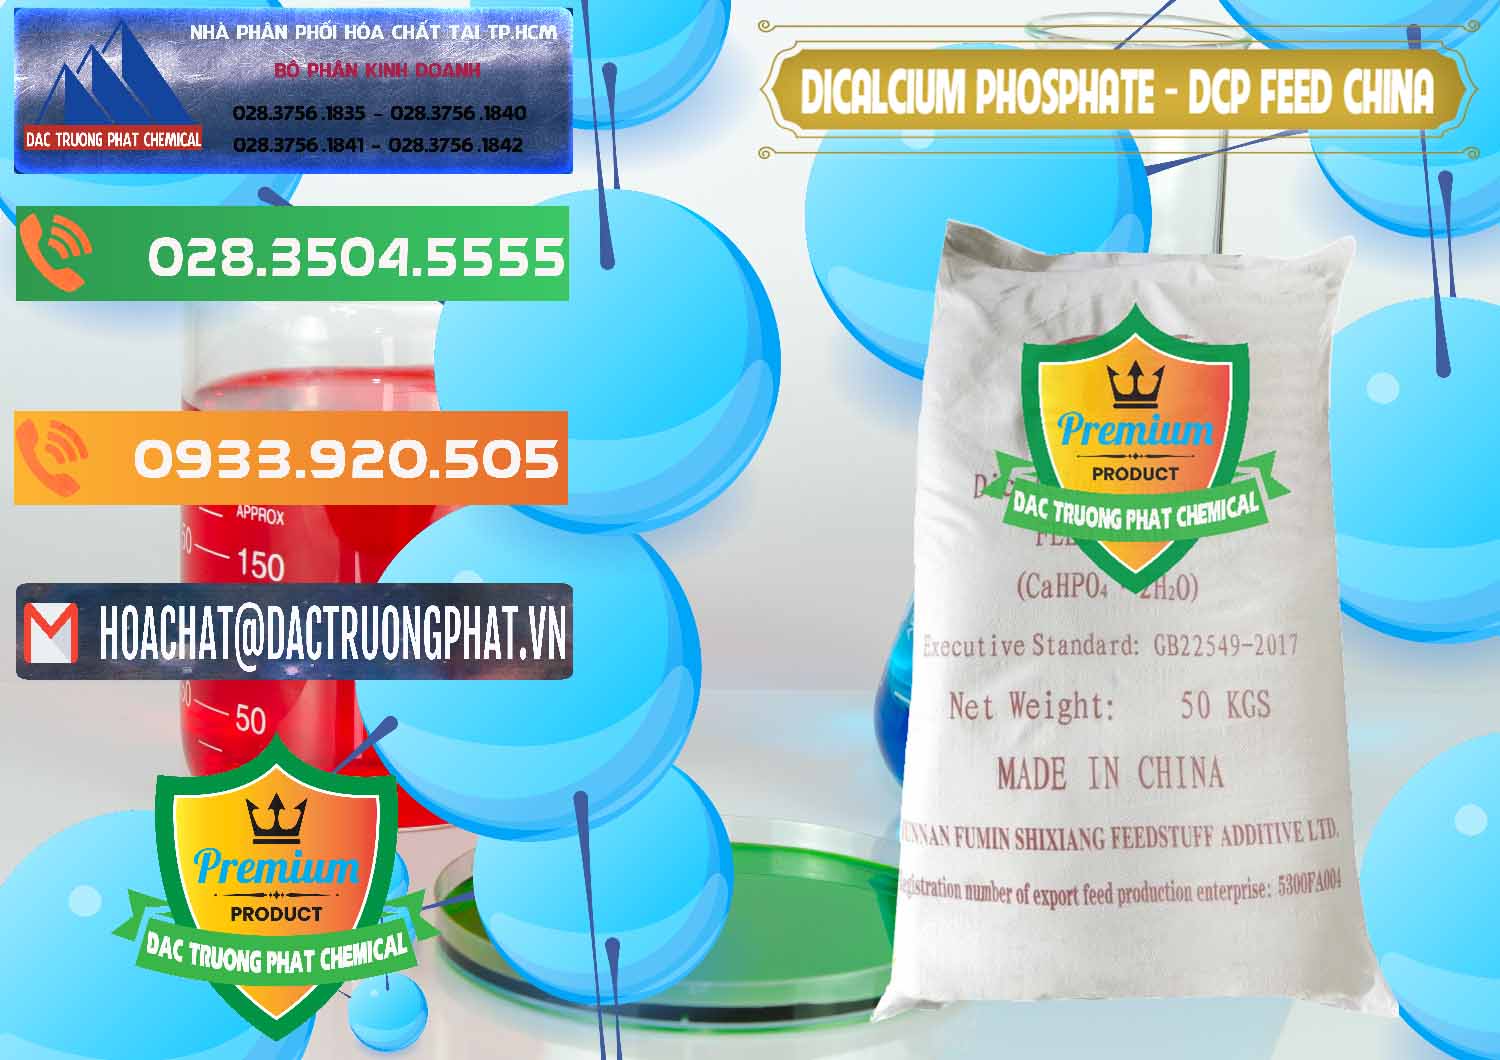 Cty nhập khẩu ( bán ) Dicalcium Phosphate - DCP Feed Grade Trung Quốc China - 0296 - Cty chuyên cung ứng _ phân phối hóa chất tại TP.HCM - hoachatxulynuoc.com.vn